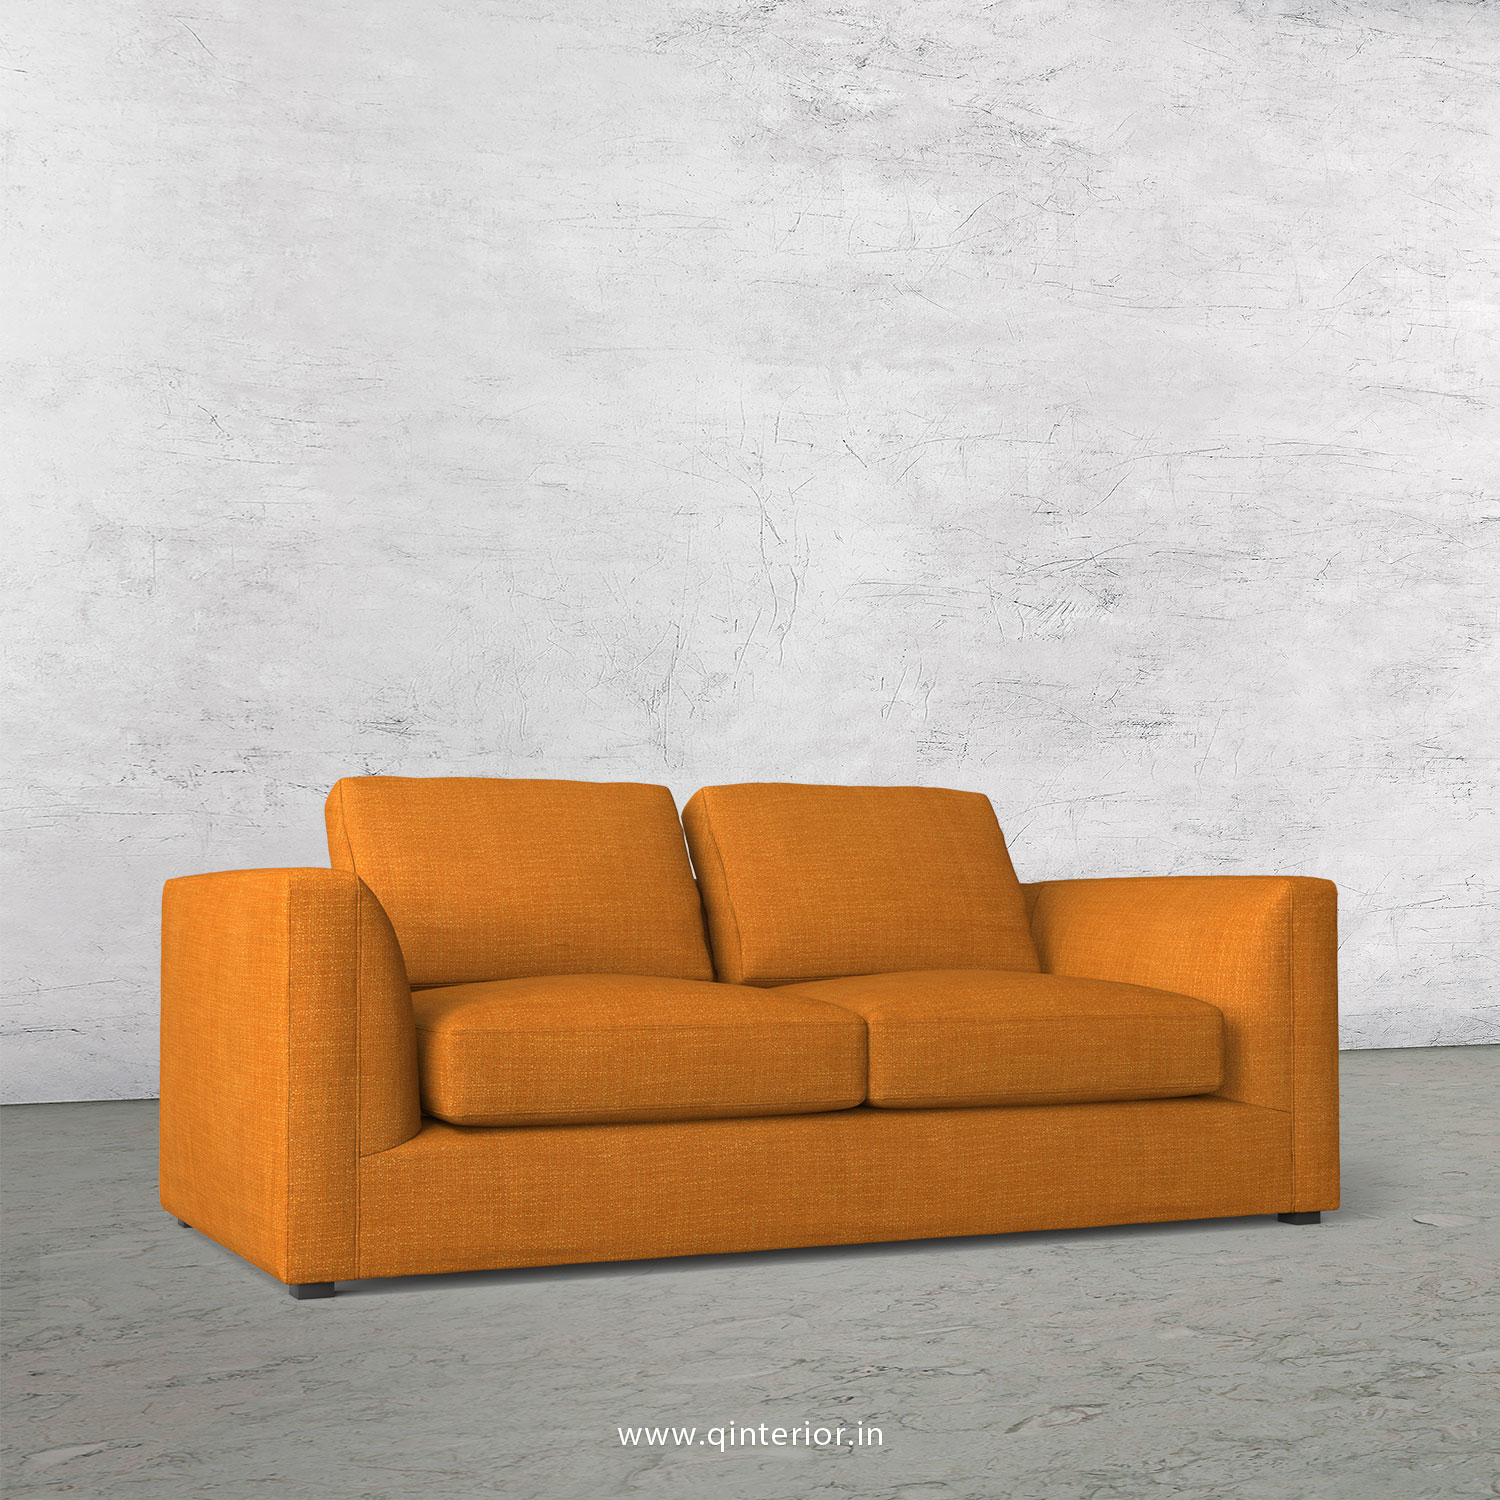 IRVINE 2 Seater Sofa in Bargello Fabric - SFA003 BG02